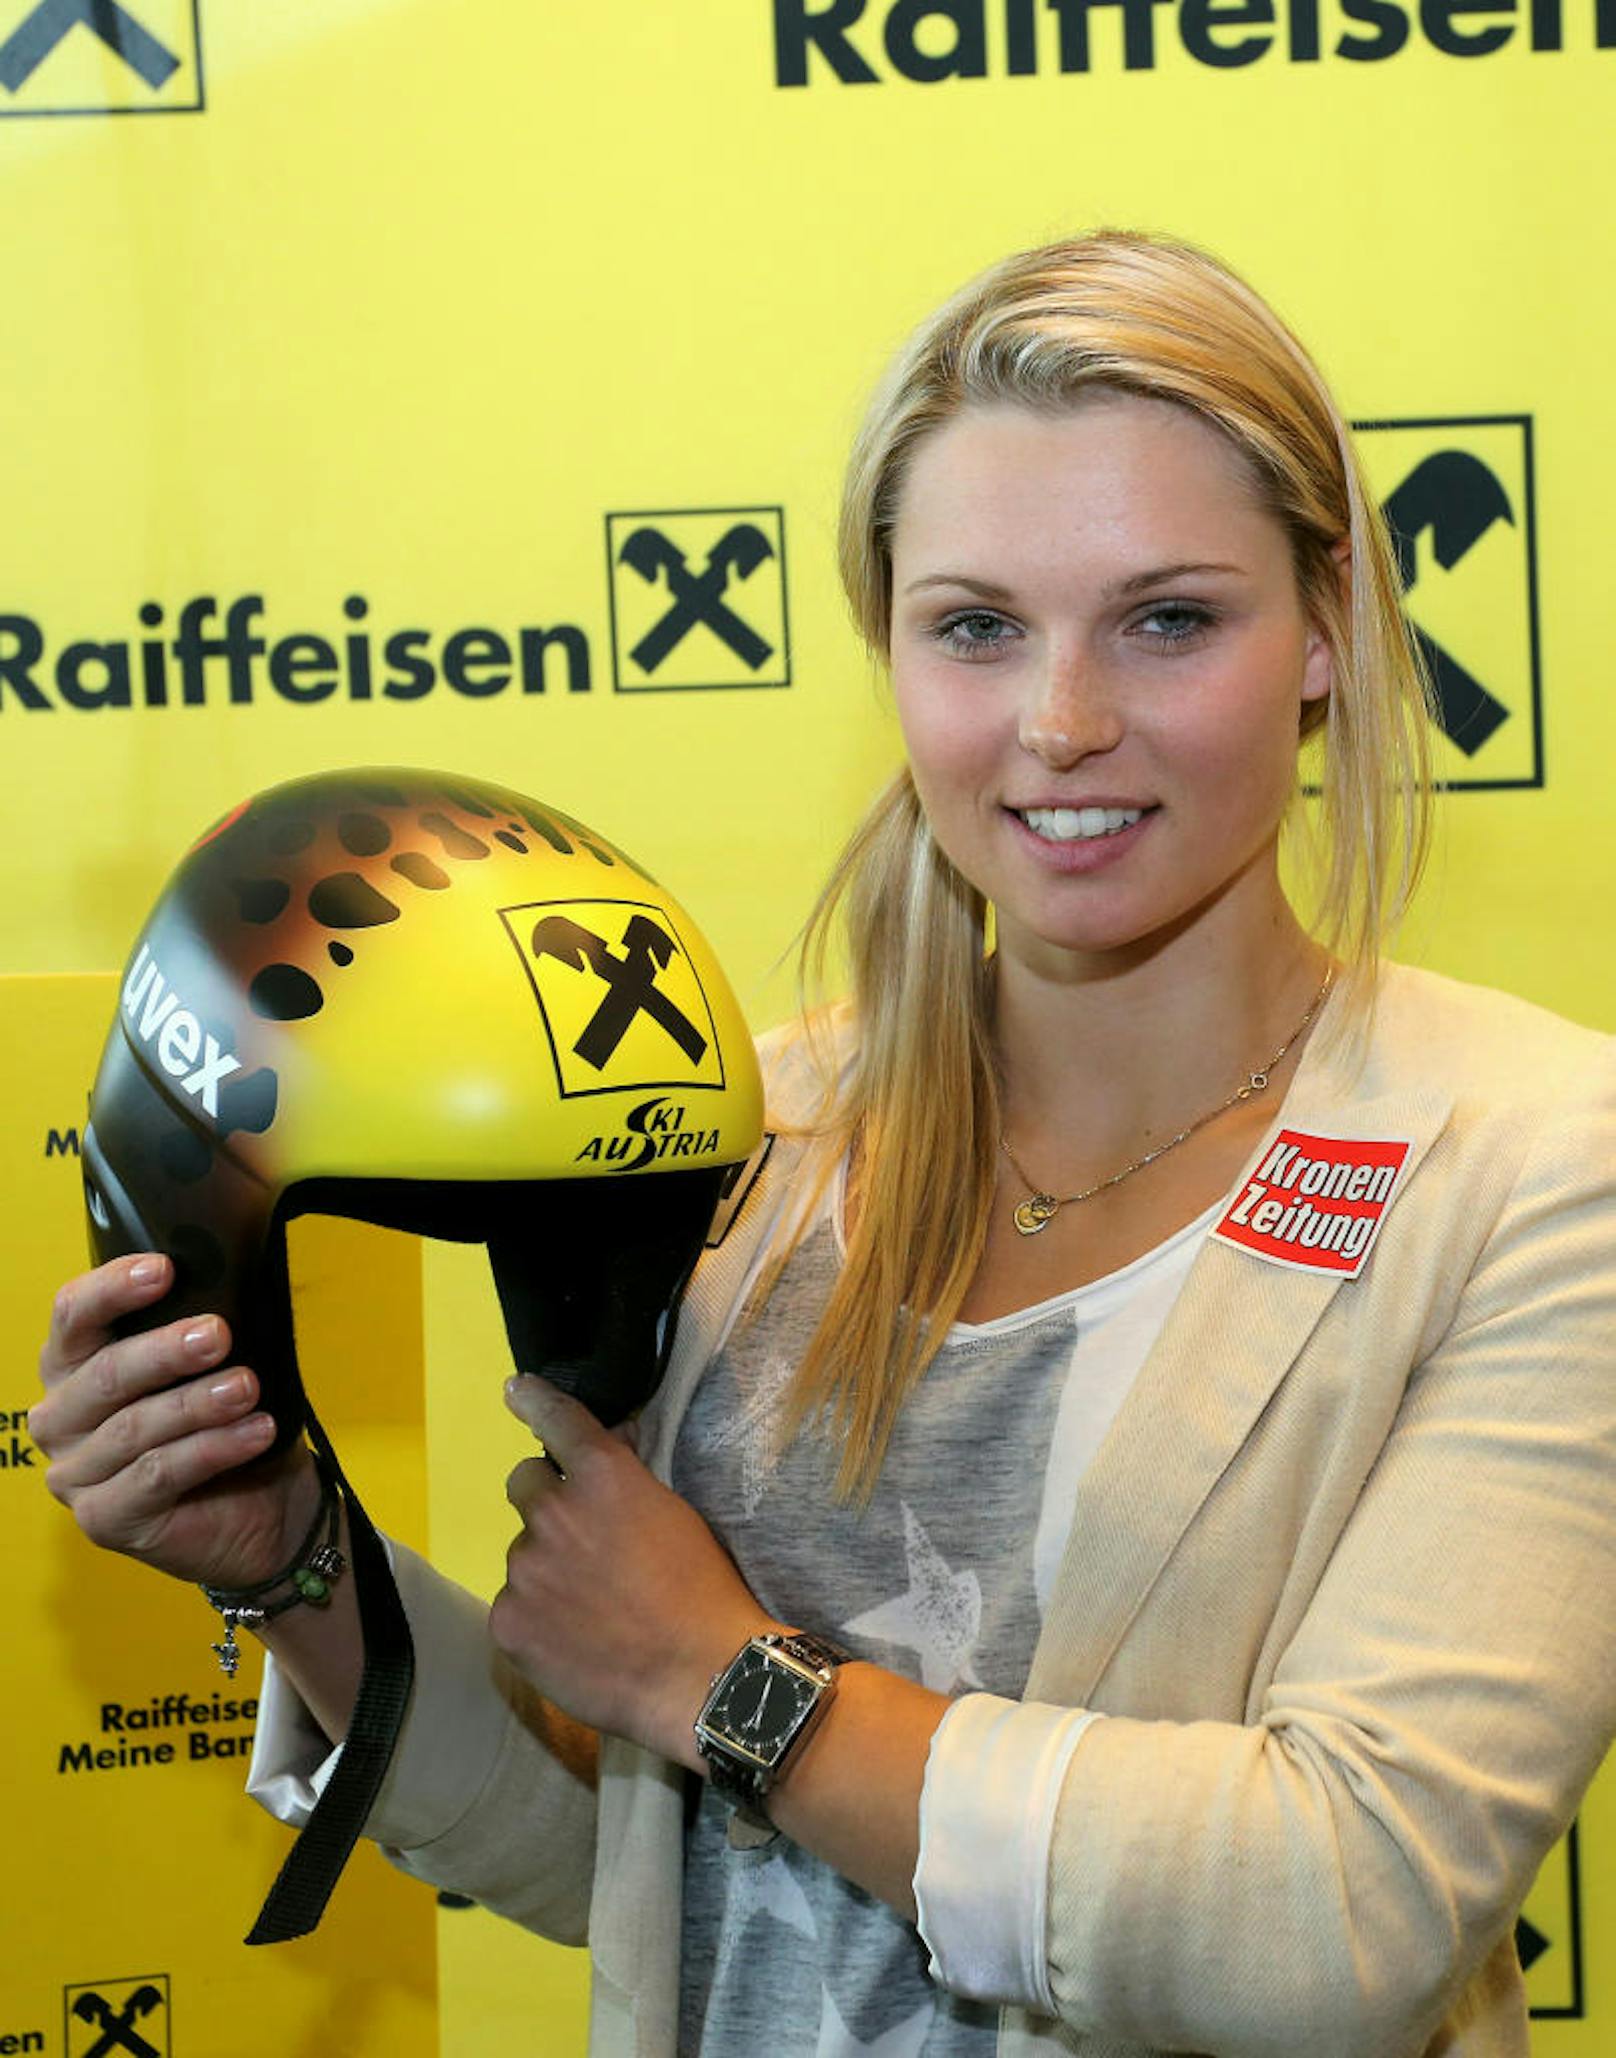 Alles neu dann im Ski-Winter 2013/14! Blondine Anna bekam mit Raiffeisen einen neuen Helmsponsor.